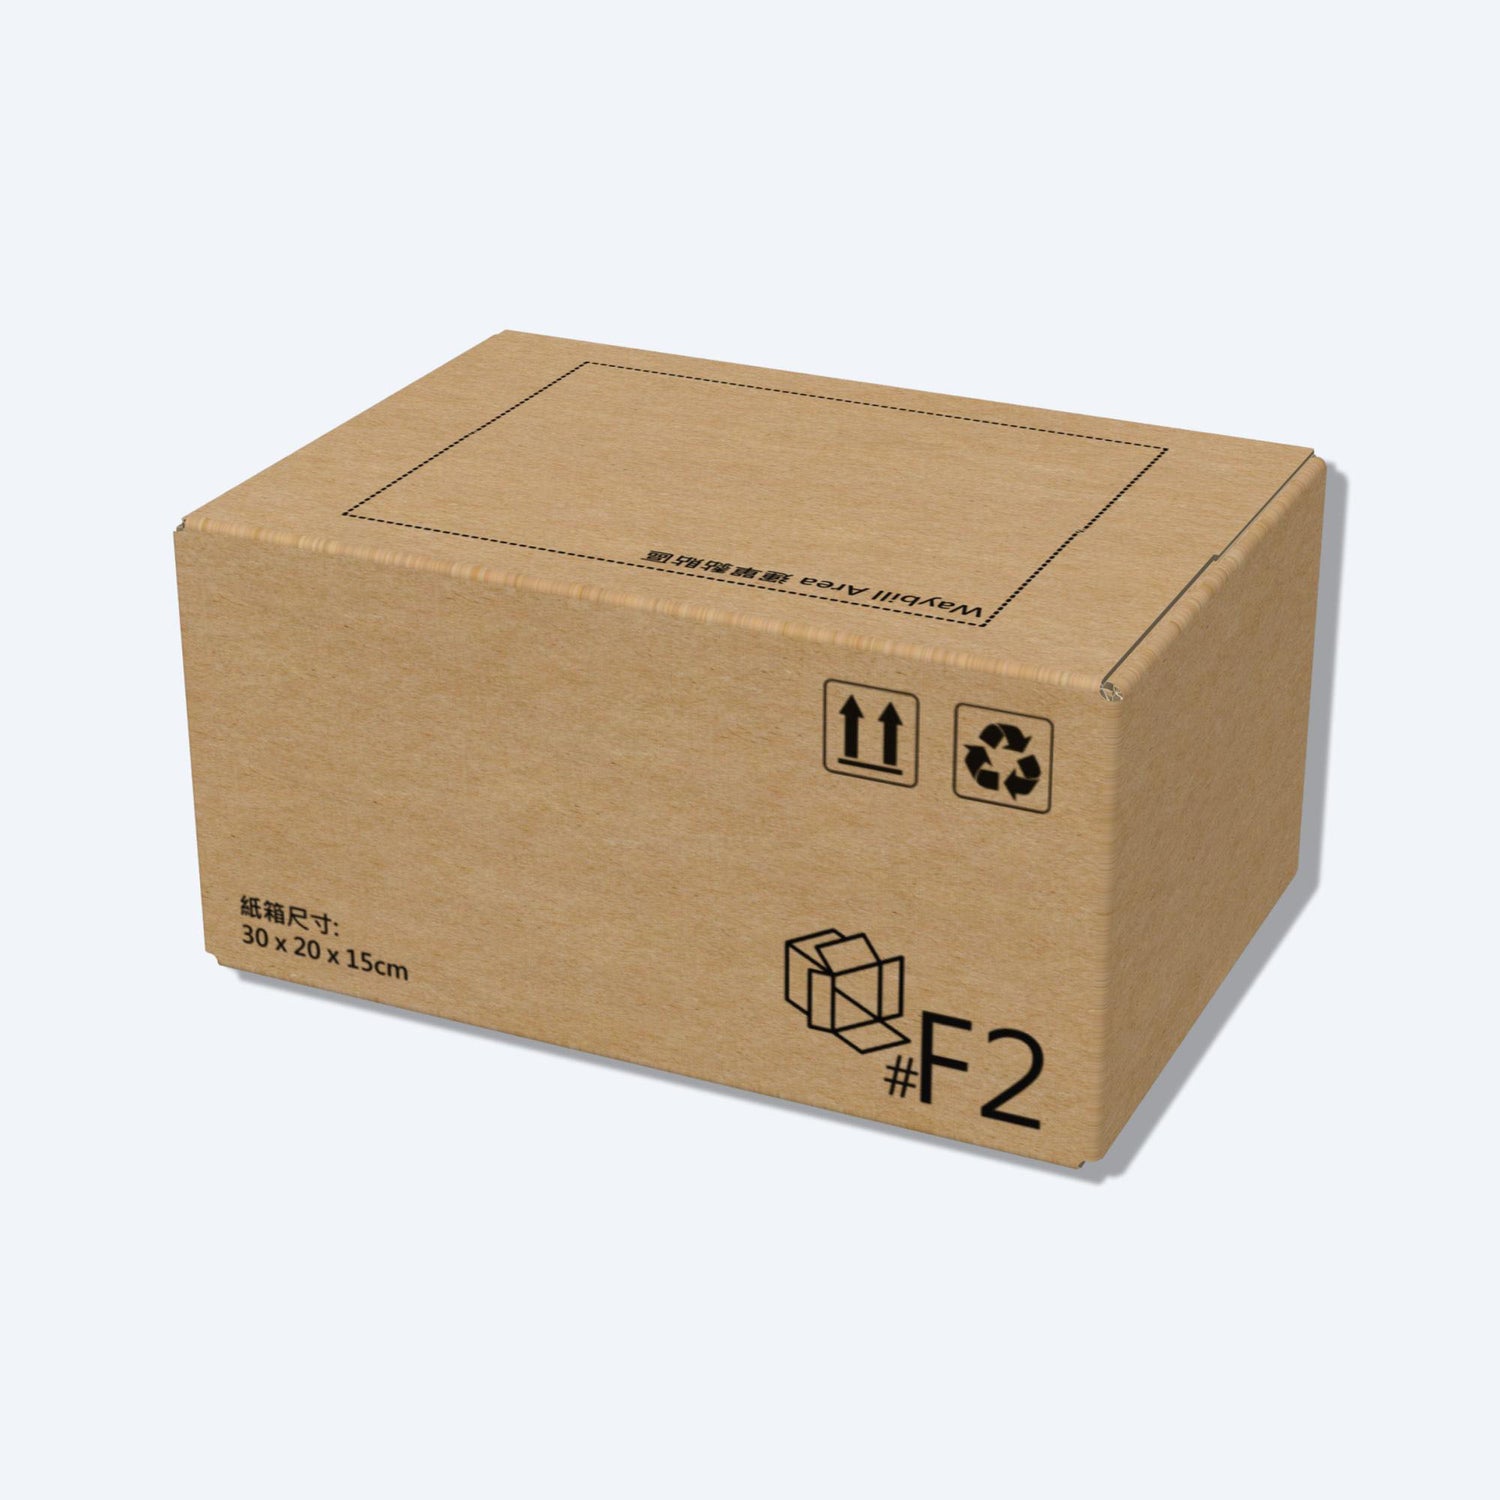 堅固的啡色順豐速運F2尺寸紙箱正面圖，這款快遞紙箱專為順豐速運設計。